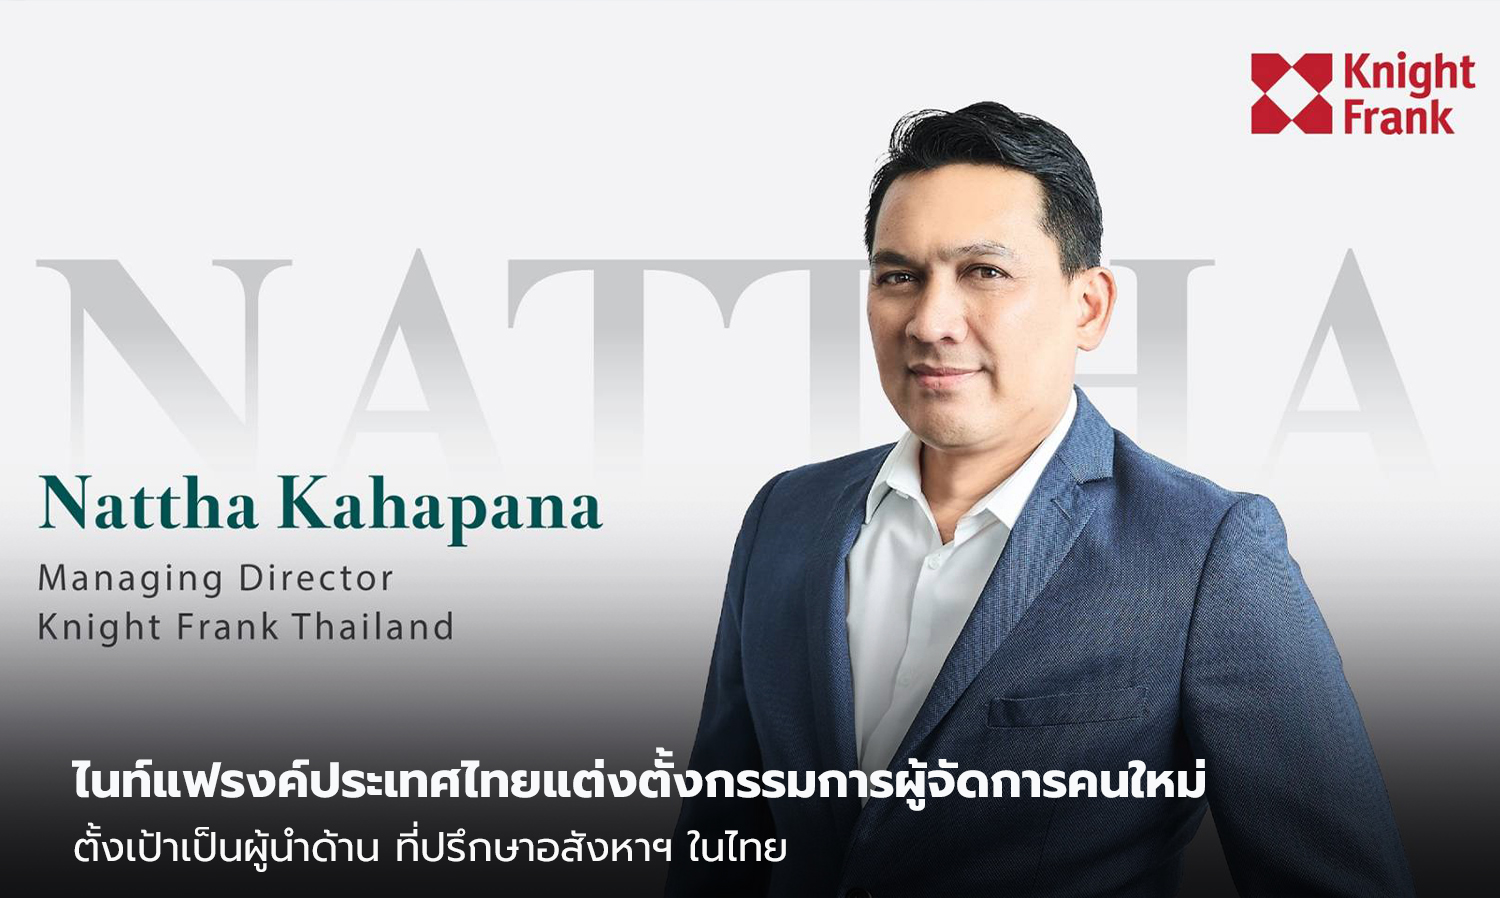 ไนท์แฟรงค์ประเทศไทยแต่งตั้งกรรมการผู้จัดการคนใหม่ ตั้งเป้าเป็นผู้นำด้าน ที่ปรึกษาอสังหาฯ ในไทย